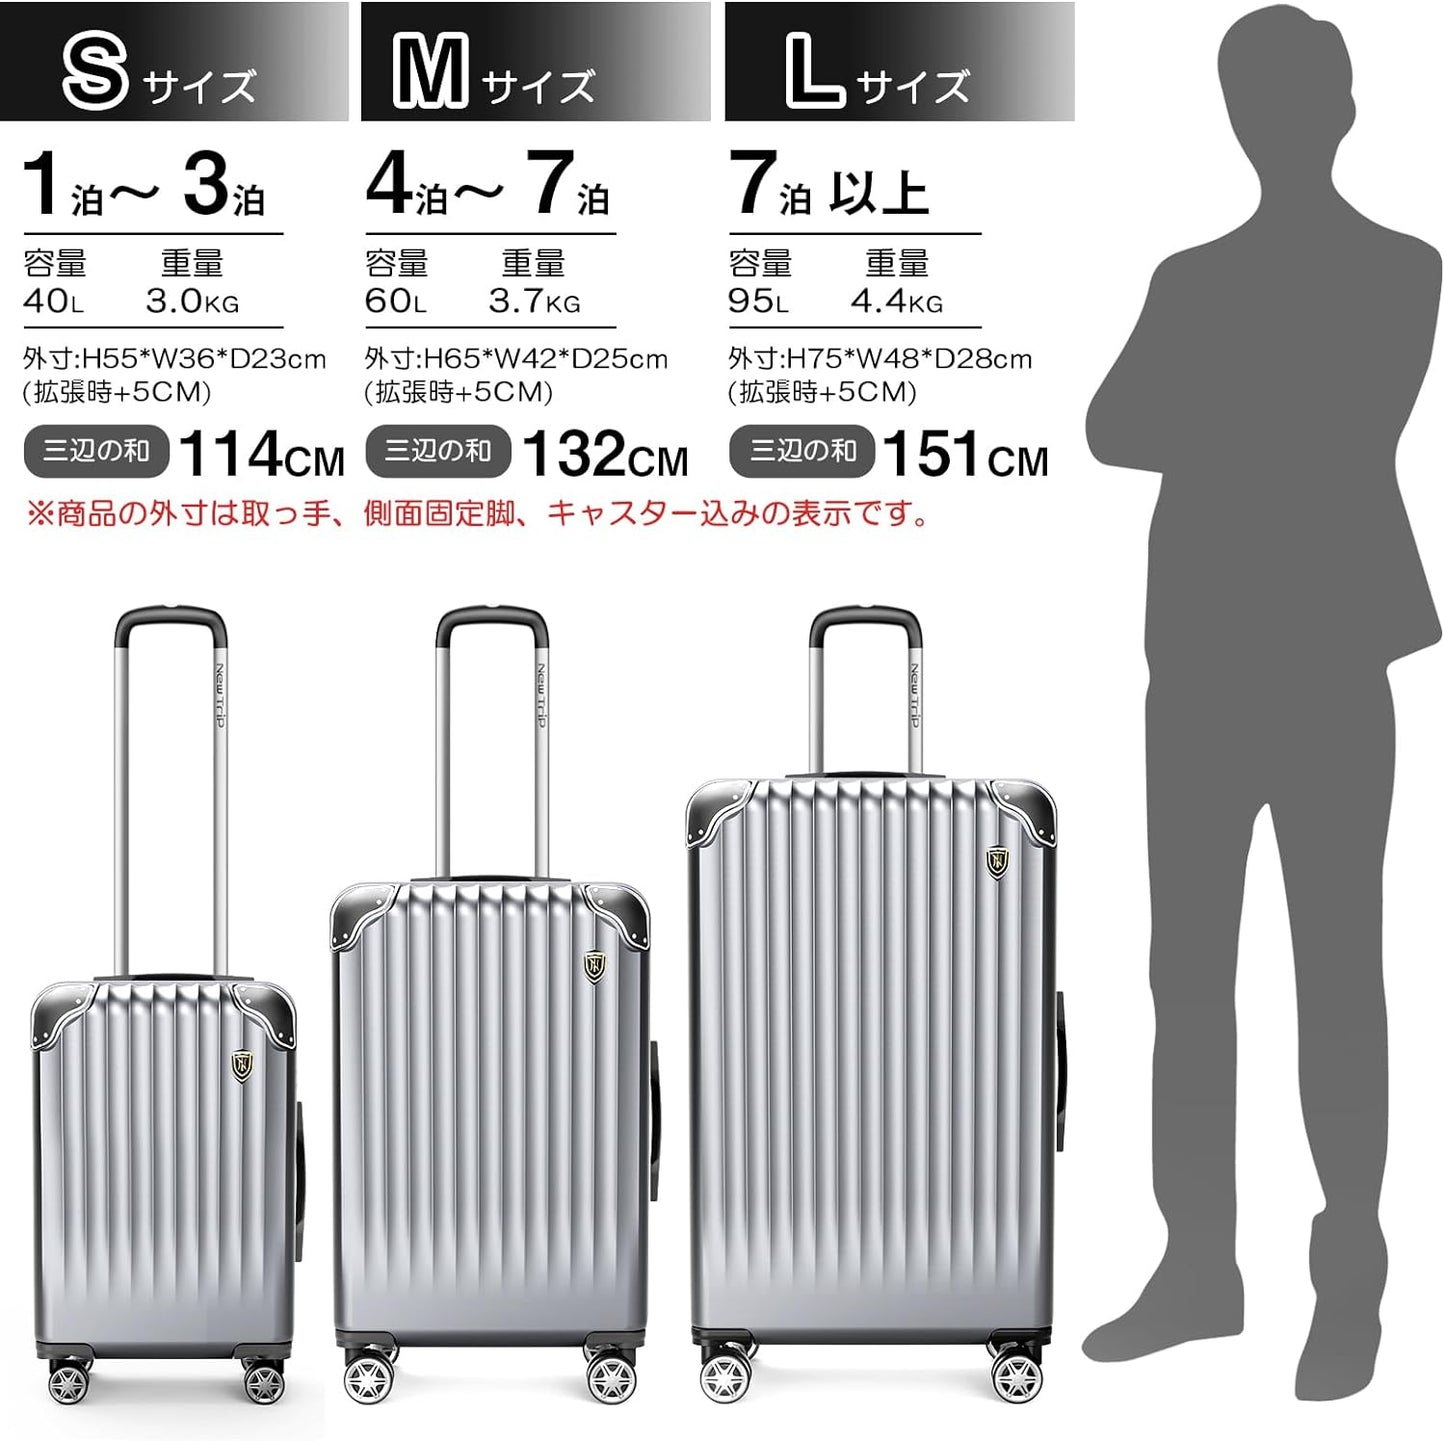 [New Trip]  スーツケース 拡張機能付き S-L シルバーグレー 40L-95L 容量 静音 旅行 海外 出張